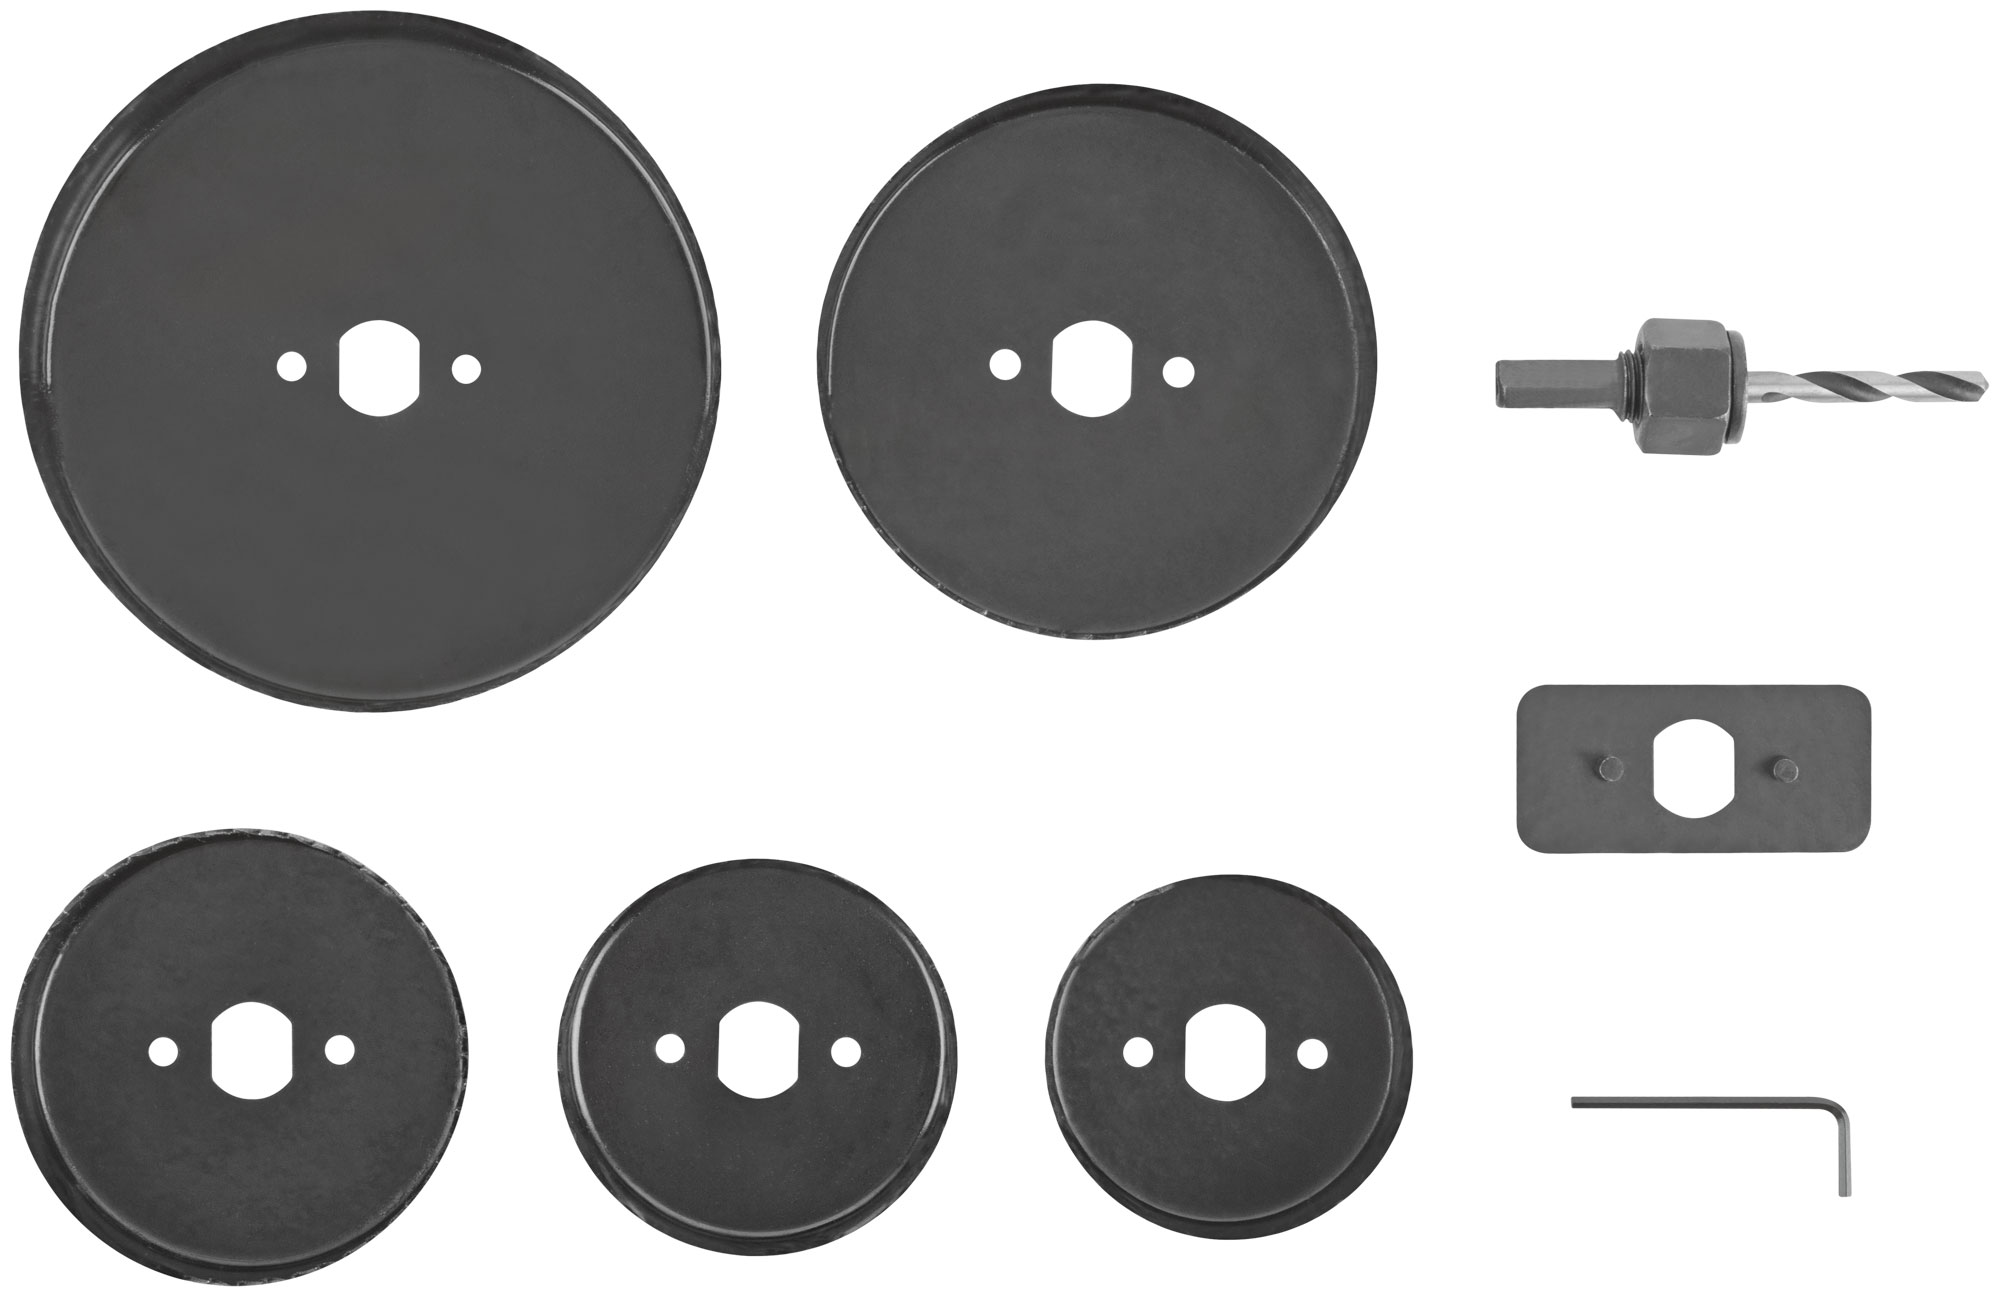 Пилы круговые Профи 68 -127 мм набор 5 шт. (68, 72, 82, 102, 127 мм)  в кейсе полотна лезвия для сабельной аккумуляторной пилы набор 31 шт